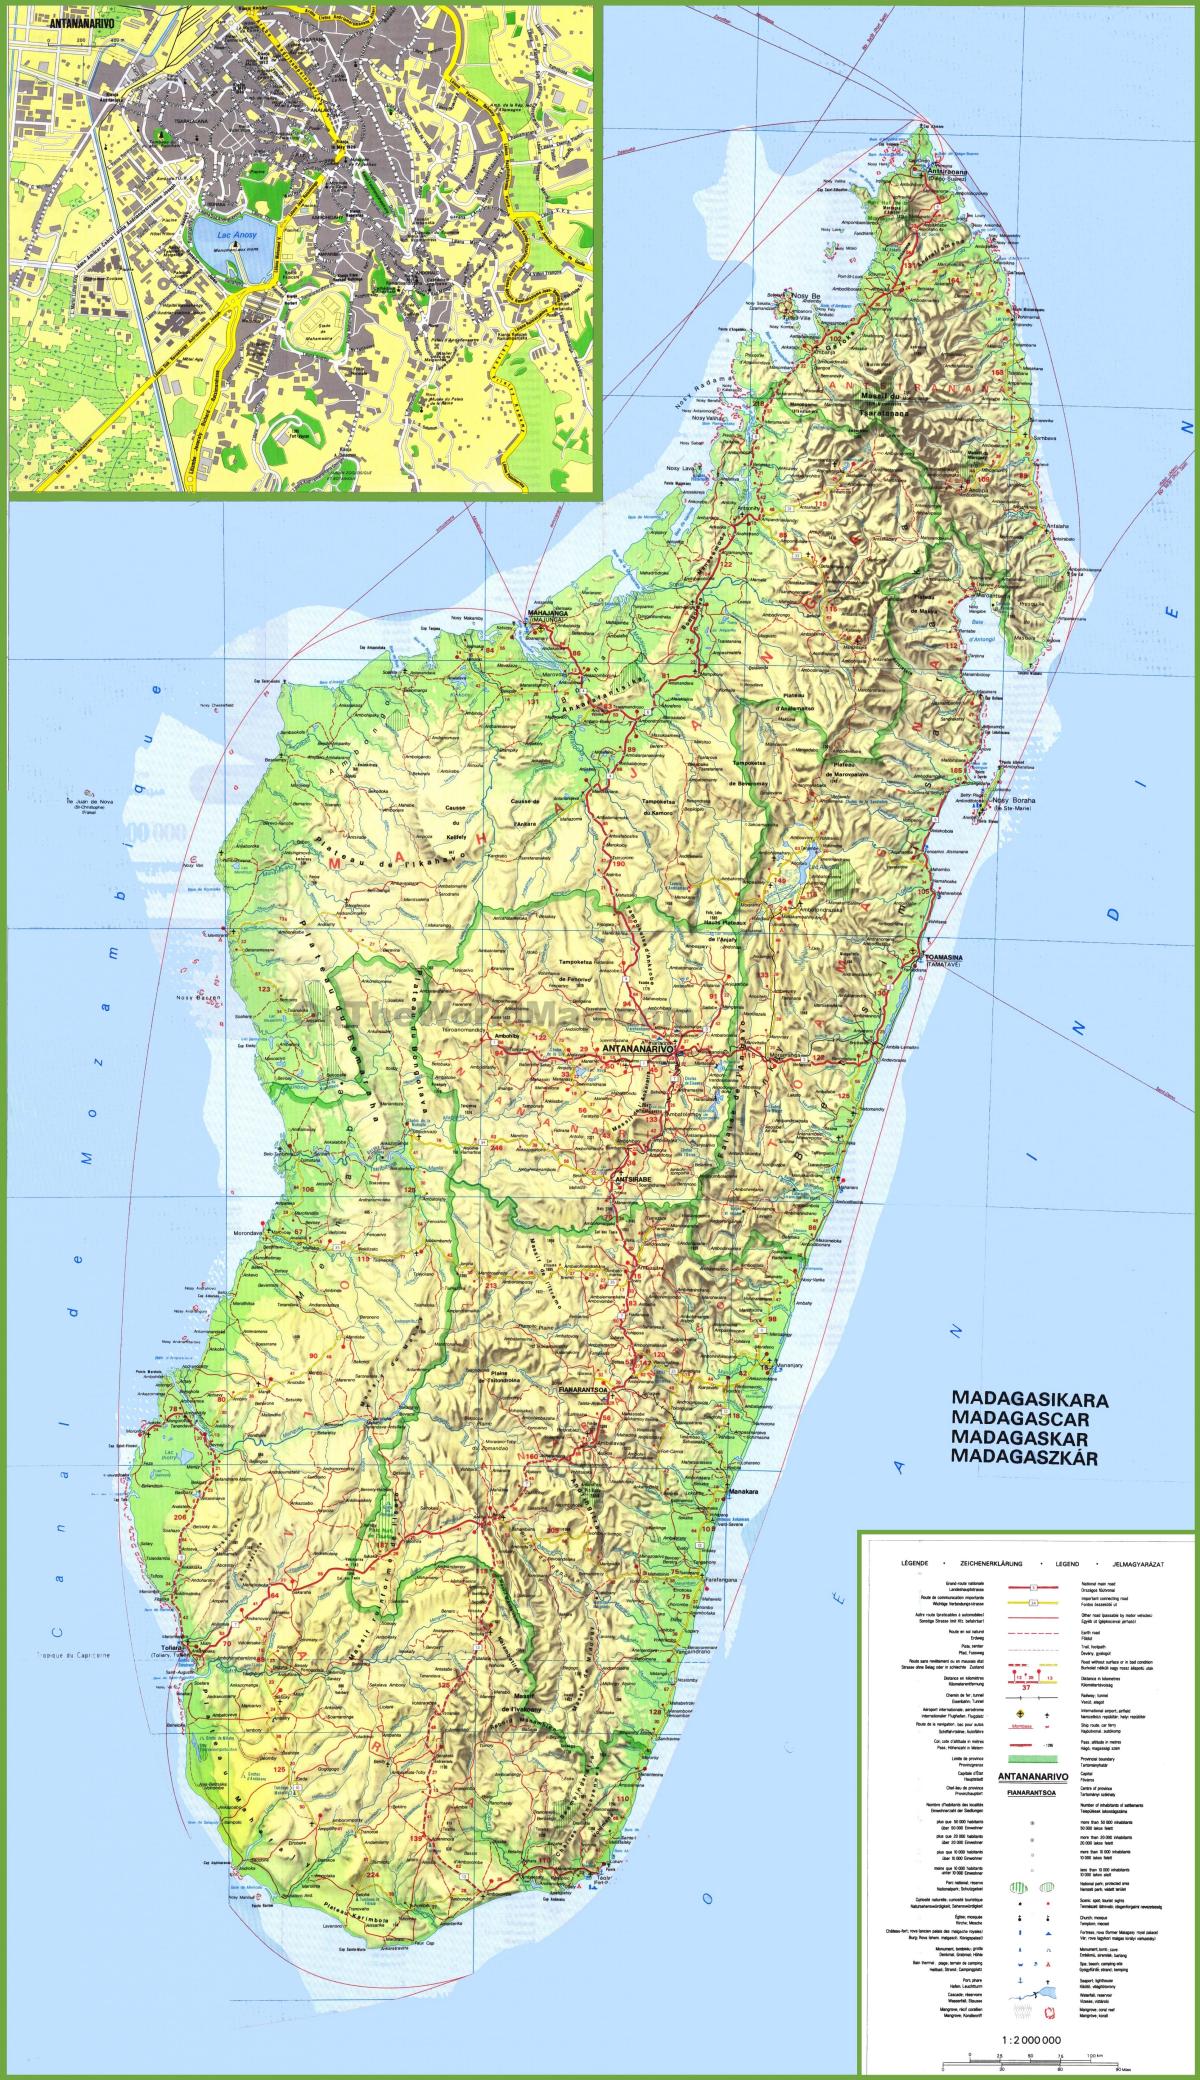 zemljevid, ki prikazuje Madagaskar